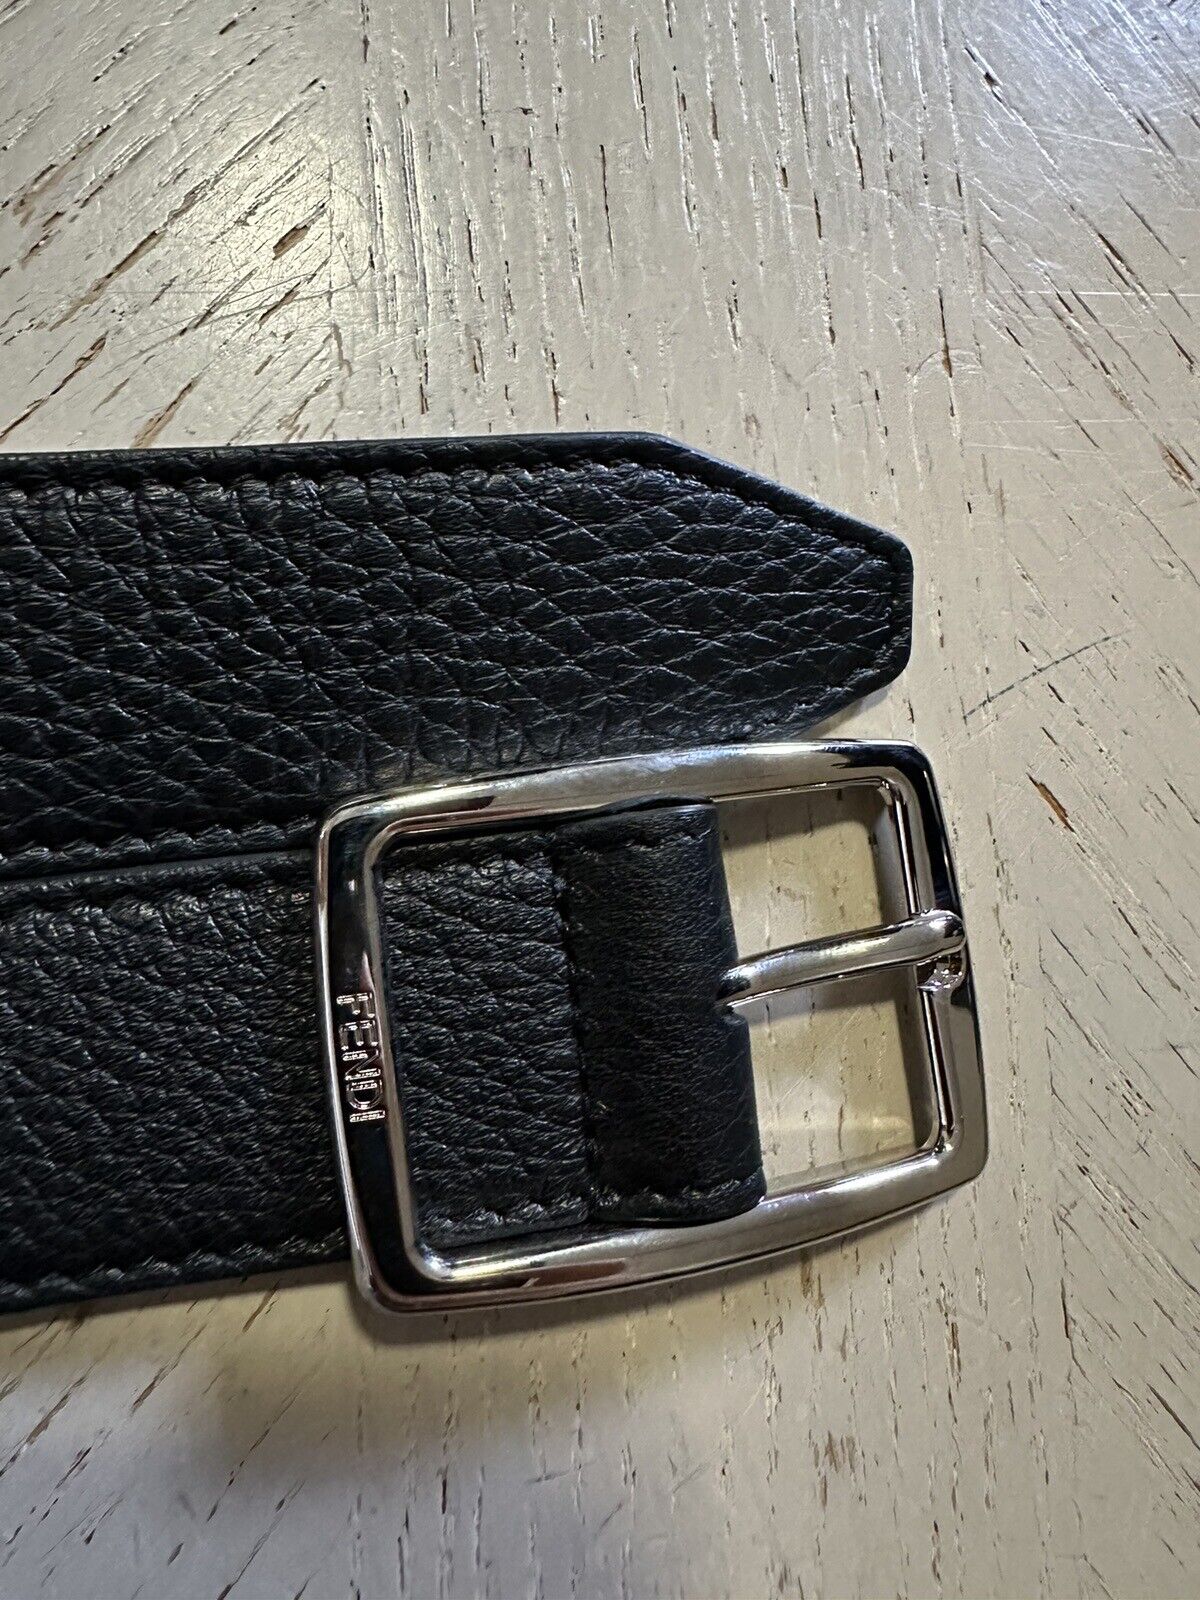 New  Fendi Men’s Grained Leather Belt Black 105/42 Italy